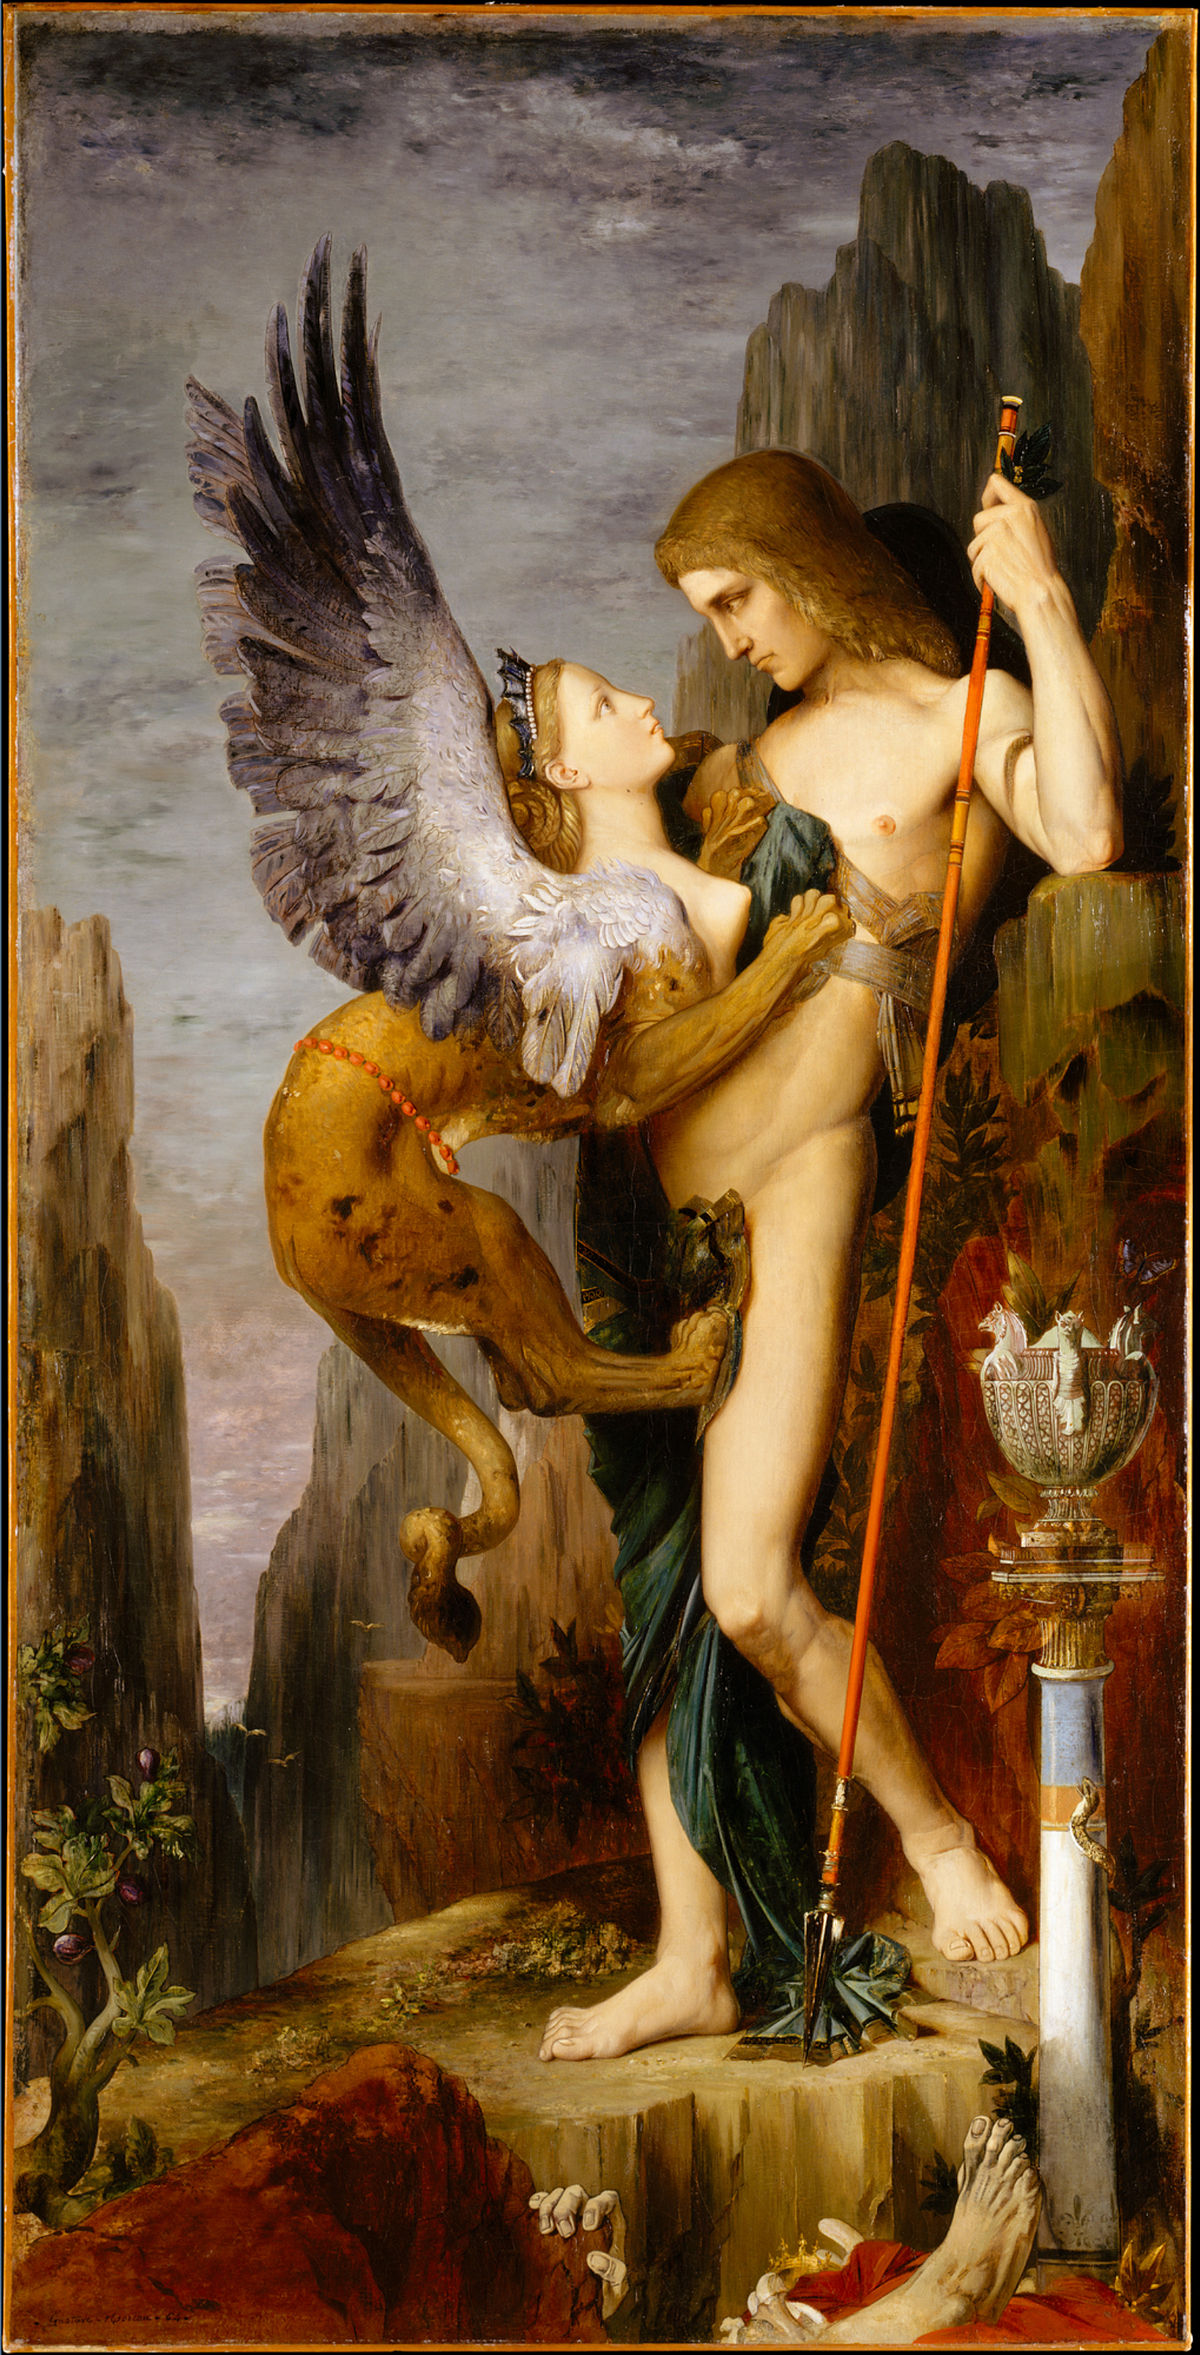 La foto muestra el cuadro "Edipo y la Esfinge", del pintor francés Gustave Moreau.